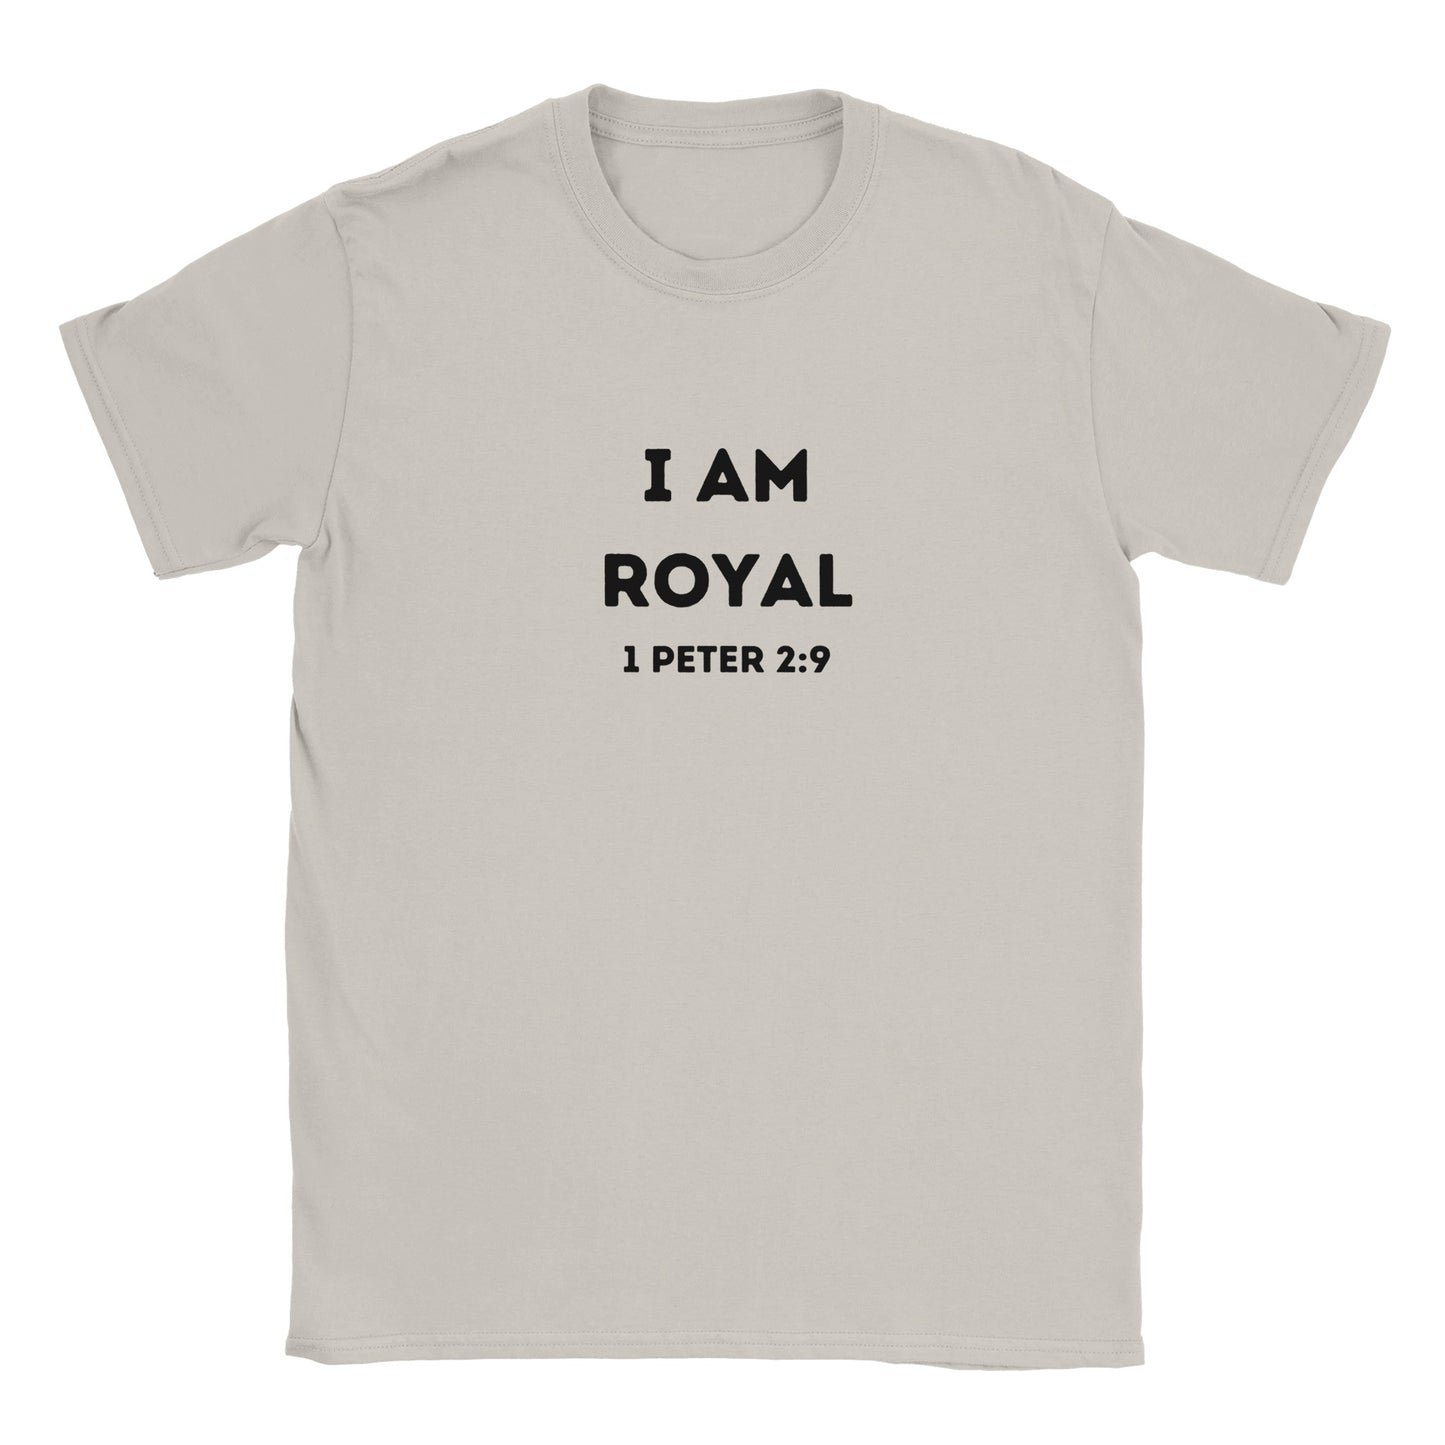 I am Royal Men’s Crewneck T-shirt